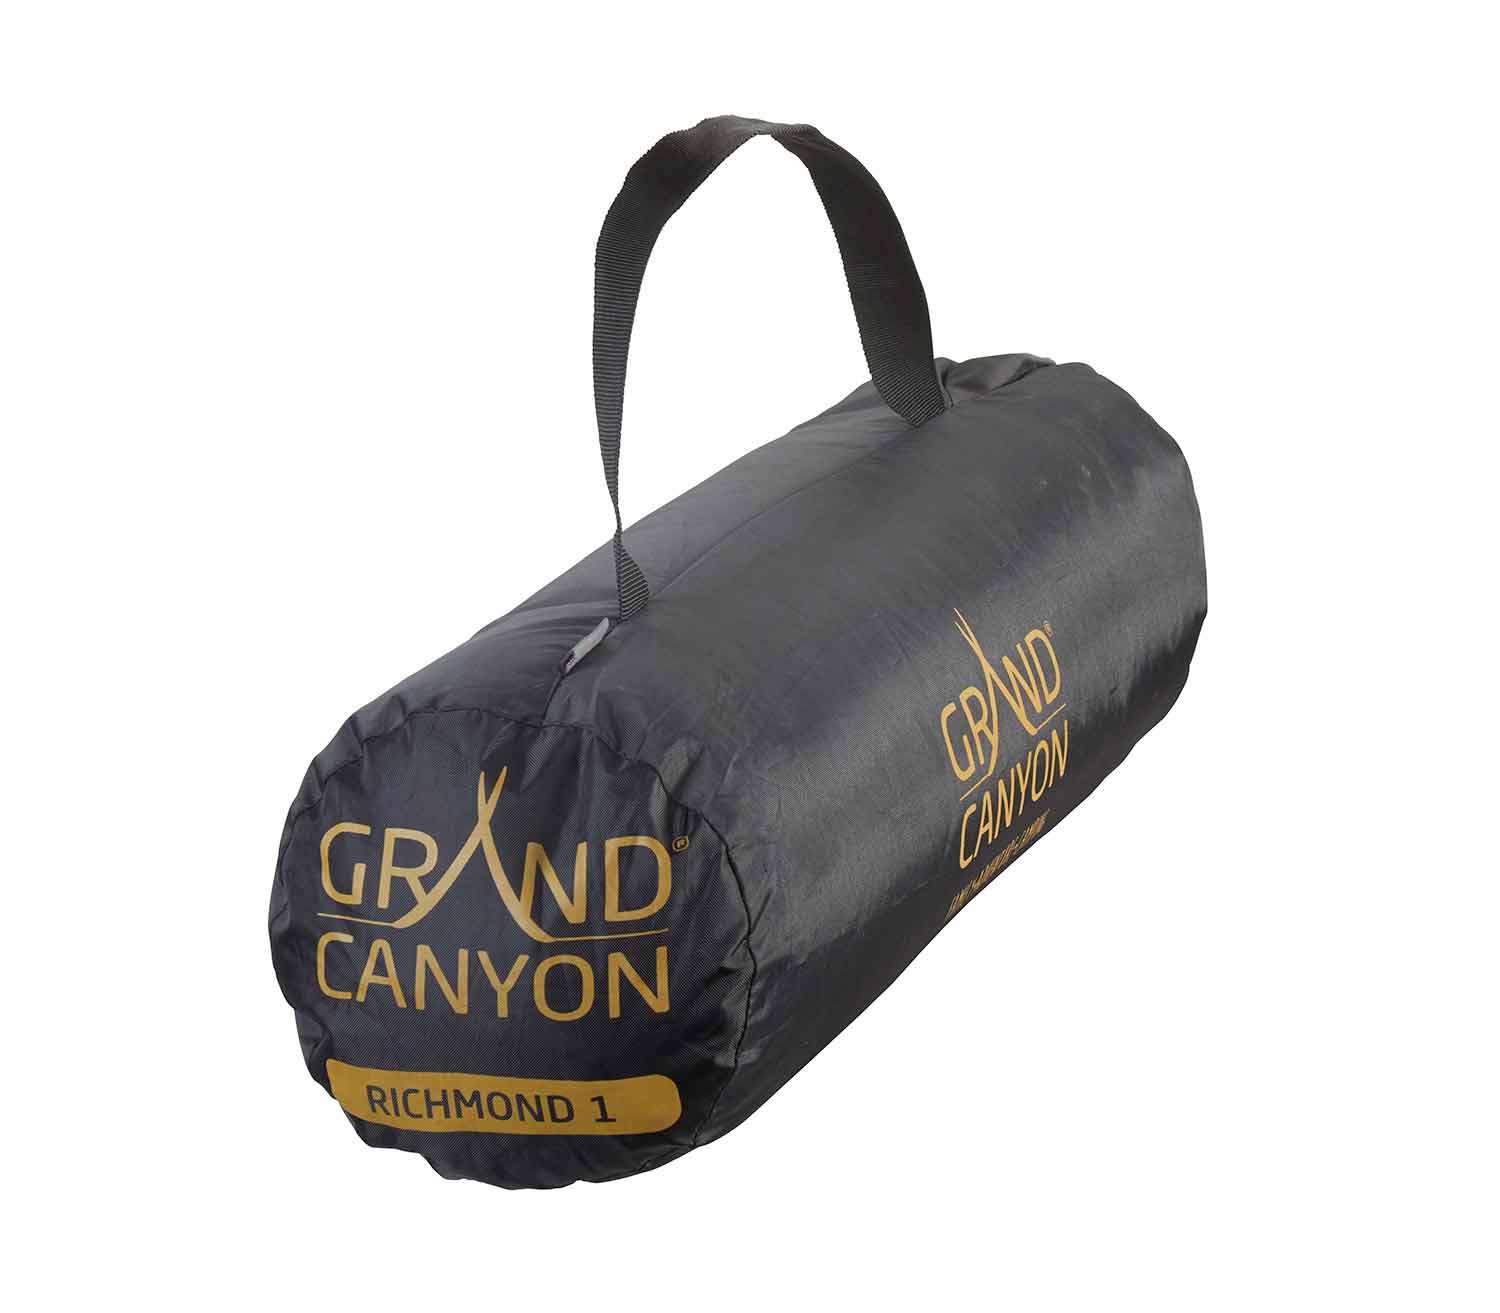 Tienda de Campaña Grand Canyon Richmond 1 bolsa